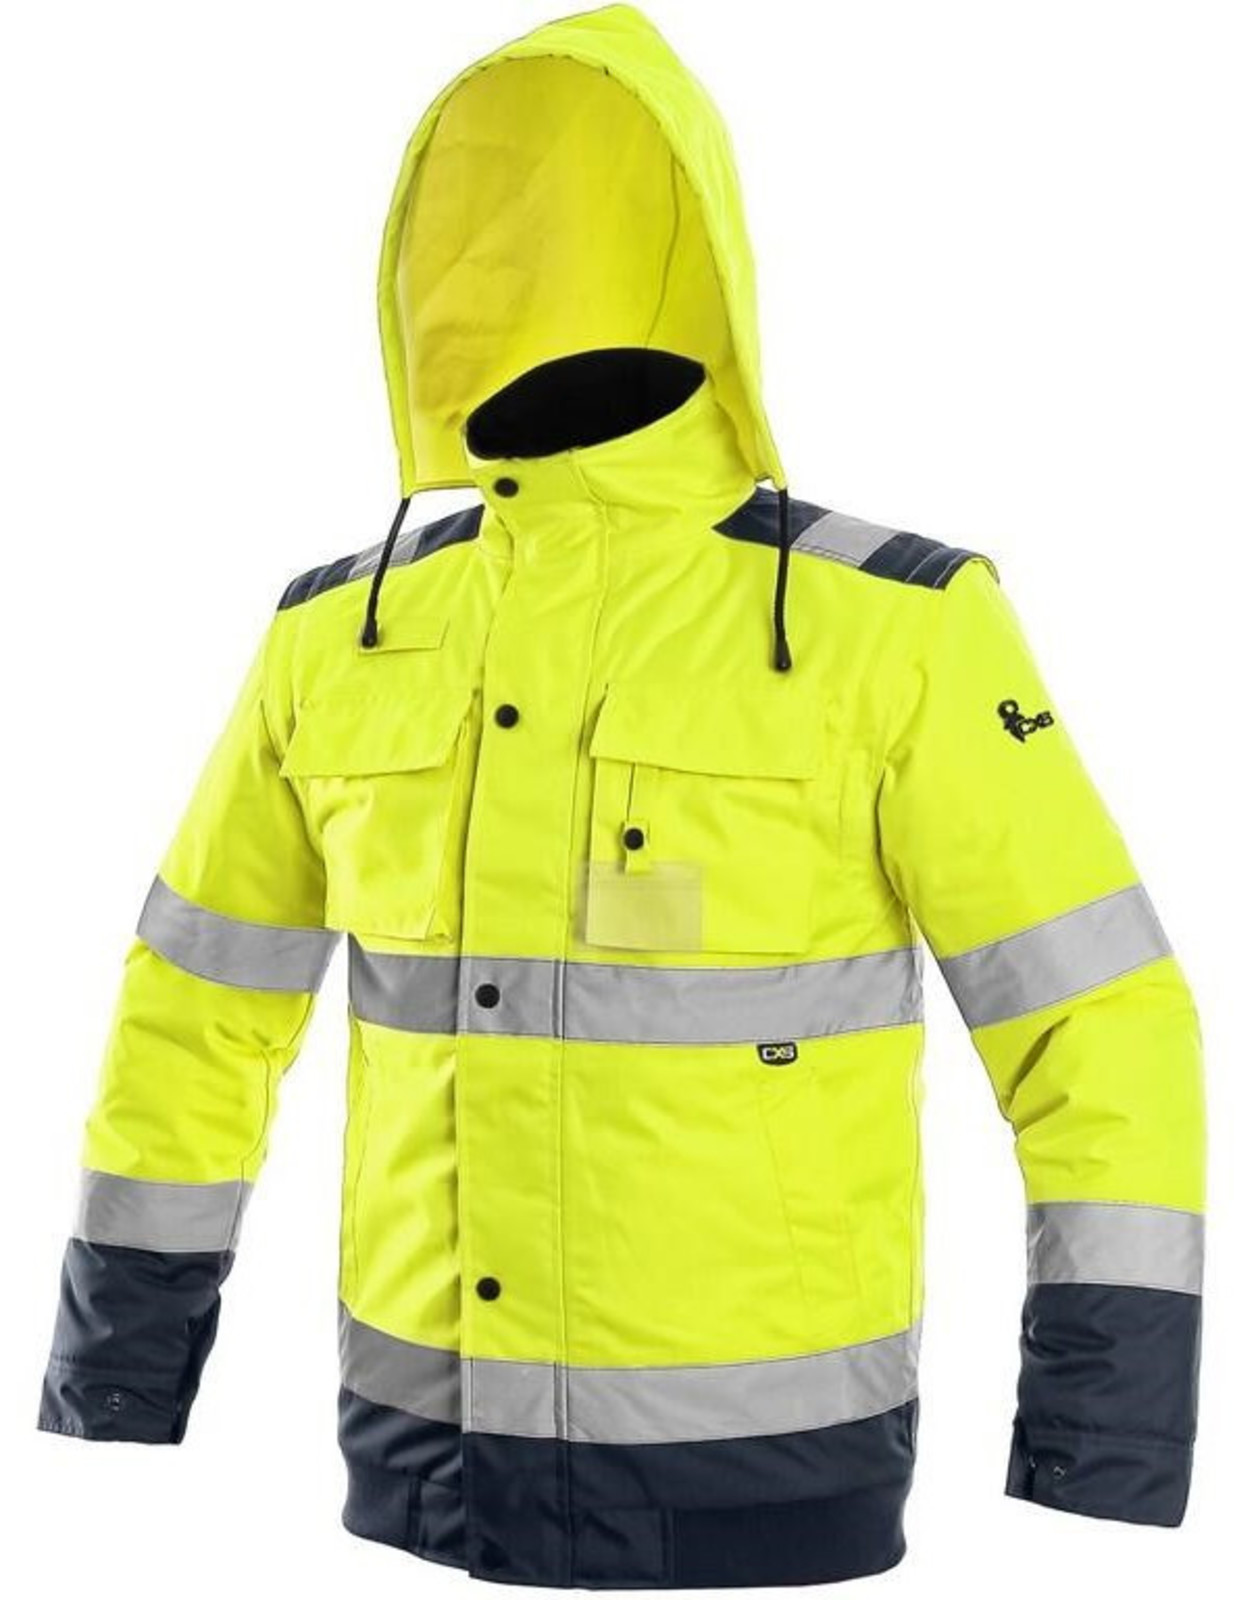 Zimná reflexná bunda CXS Luton 2v1 - veľkosť: S, farba: žltá/navy